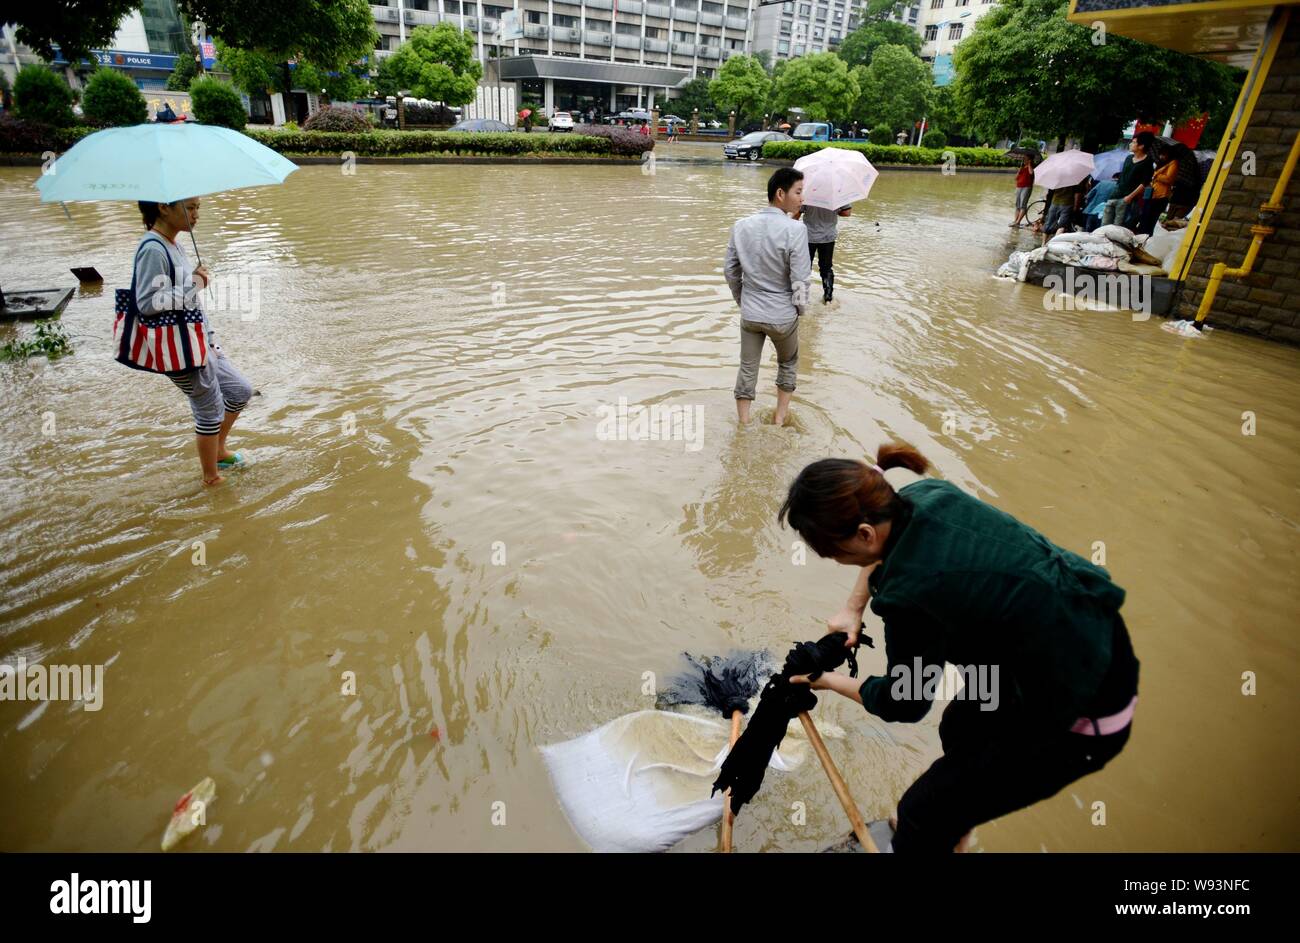 Chinesische Bürger aufräumen Verwirrungen verursacht durch Taifun Fitow in Hangzhou, China Zhejiang provinz, 8. Oktober 2013. Ein massiver Taifun, Prom hatte Stockfoto